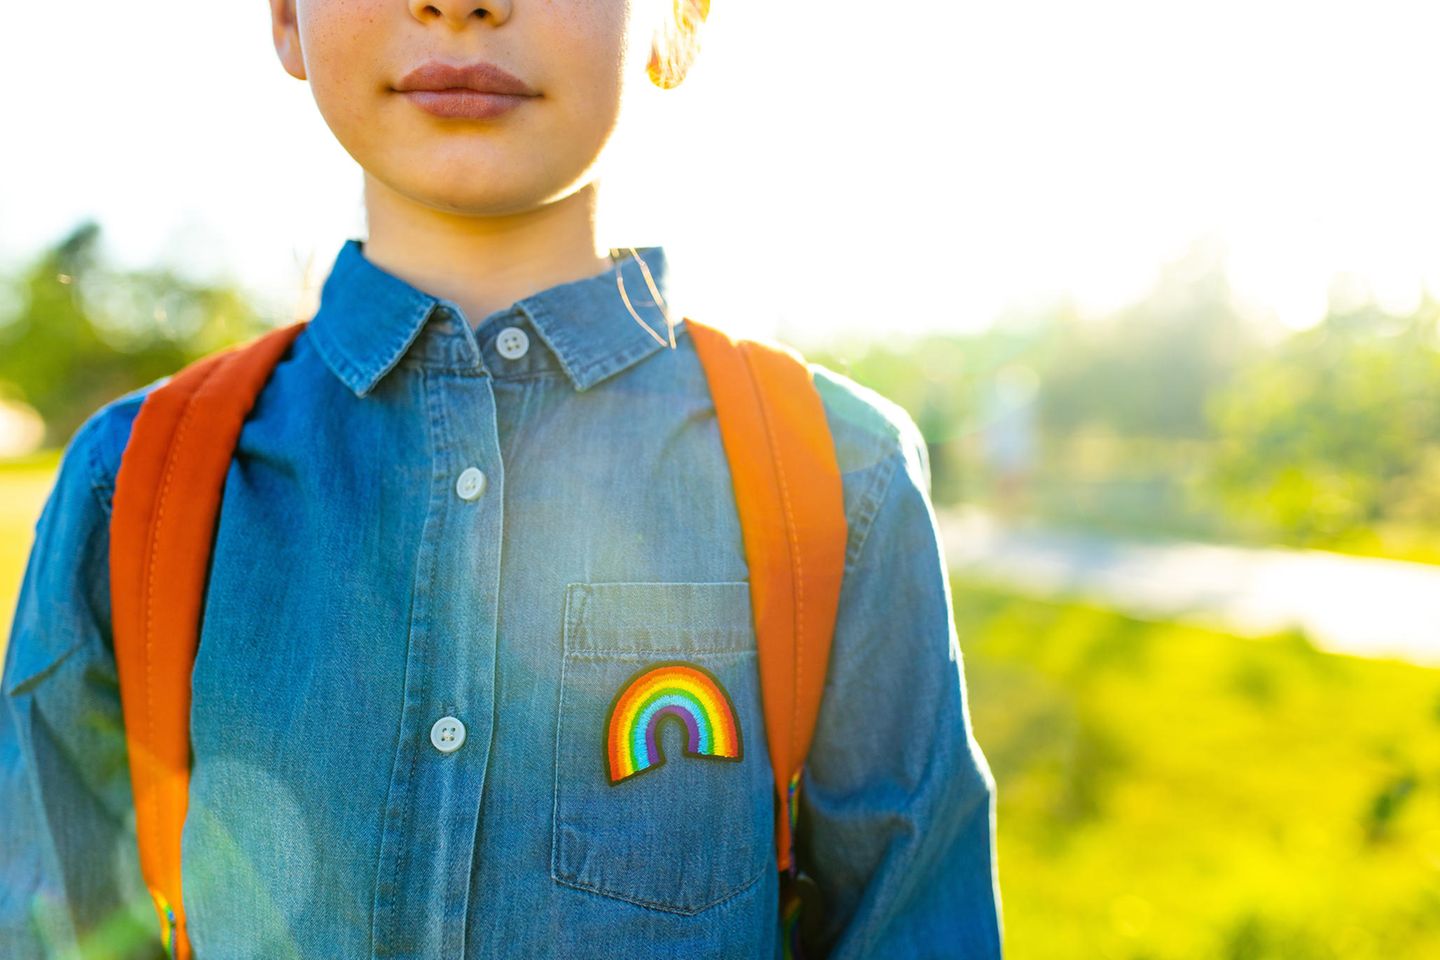 Queere Aufklärung: Kind läuft mit Regenbogen-Aufnäher und Rucksack